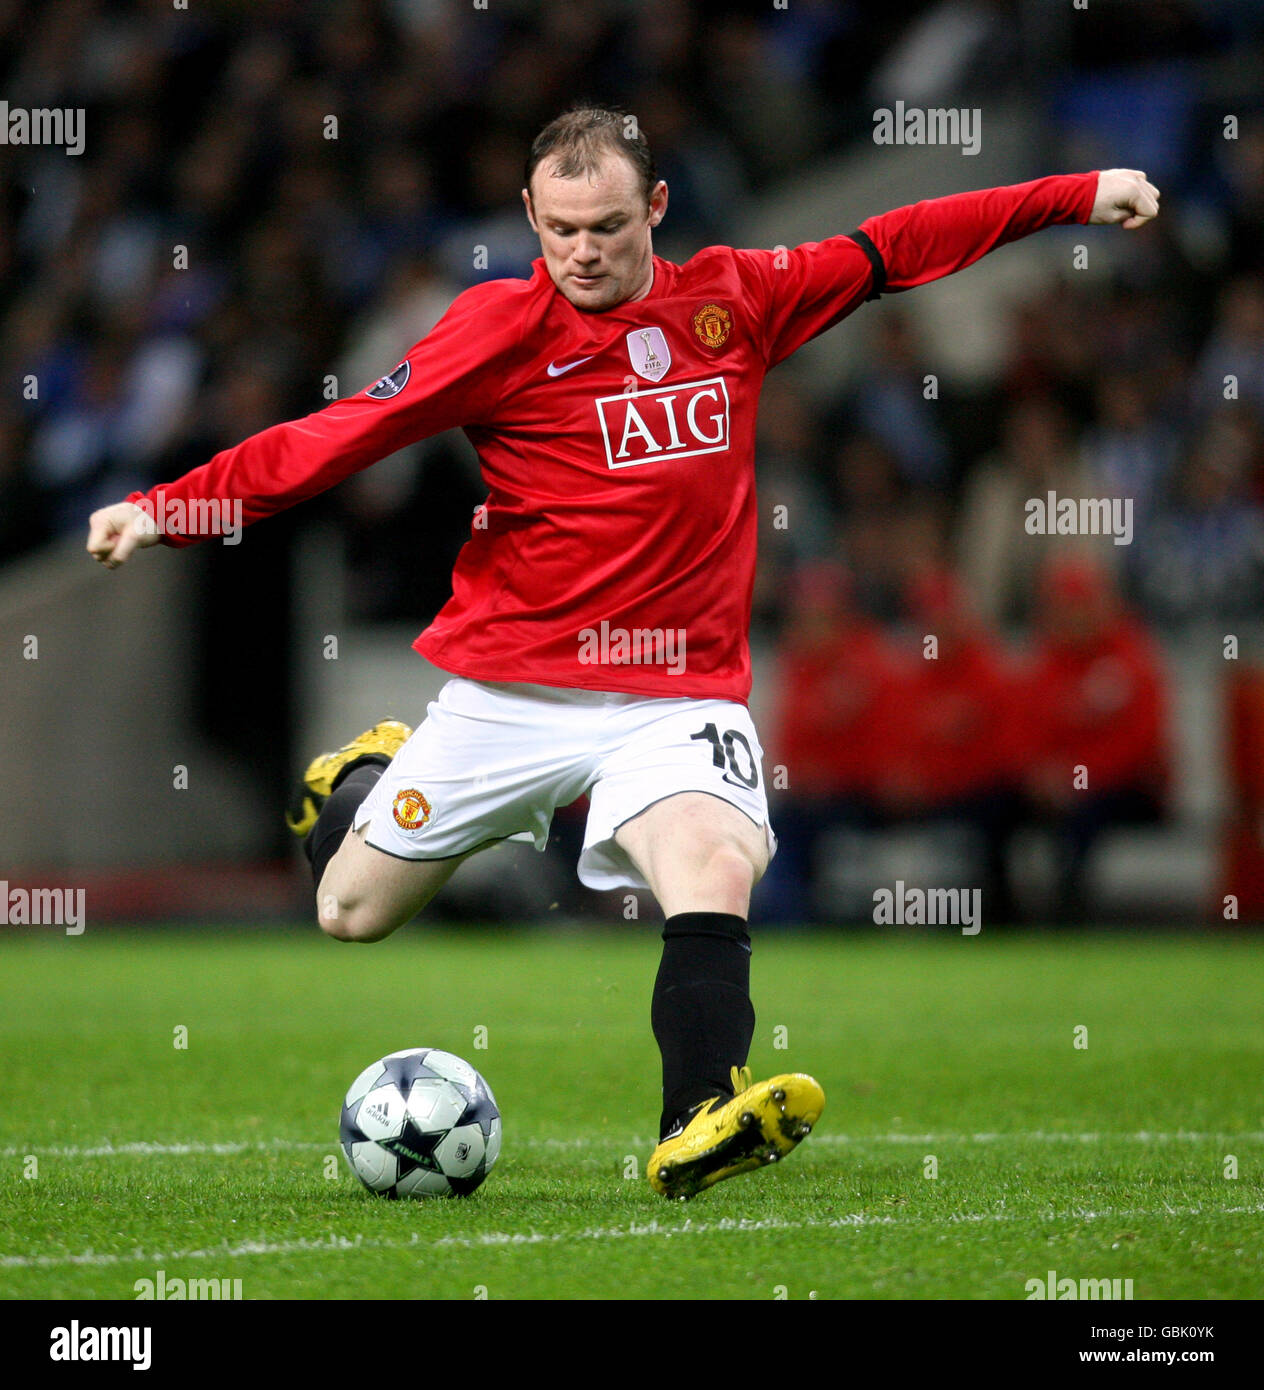 Football - UEFA Champions League - quart de finale - deuxième étape - FC Porto / Manchester United - Estadio do Dragao. Wayne Rooney, Manchester United. Banque D'Images